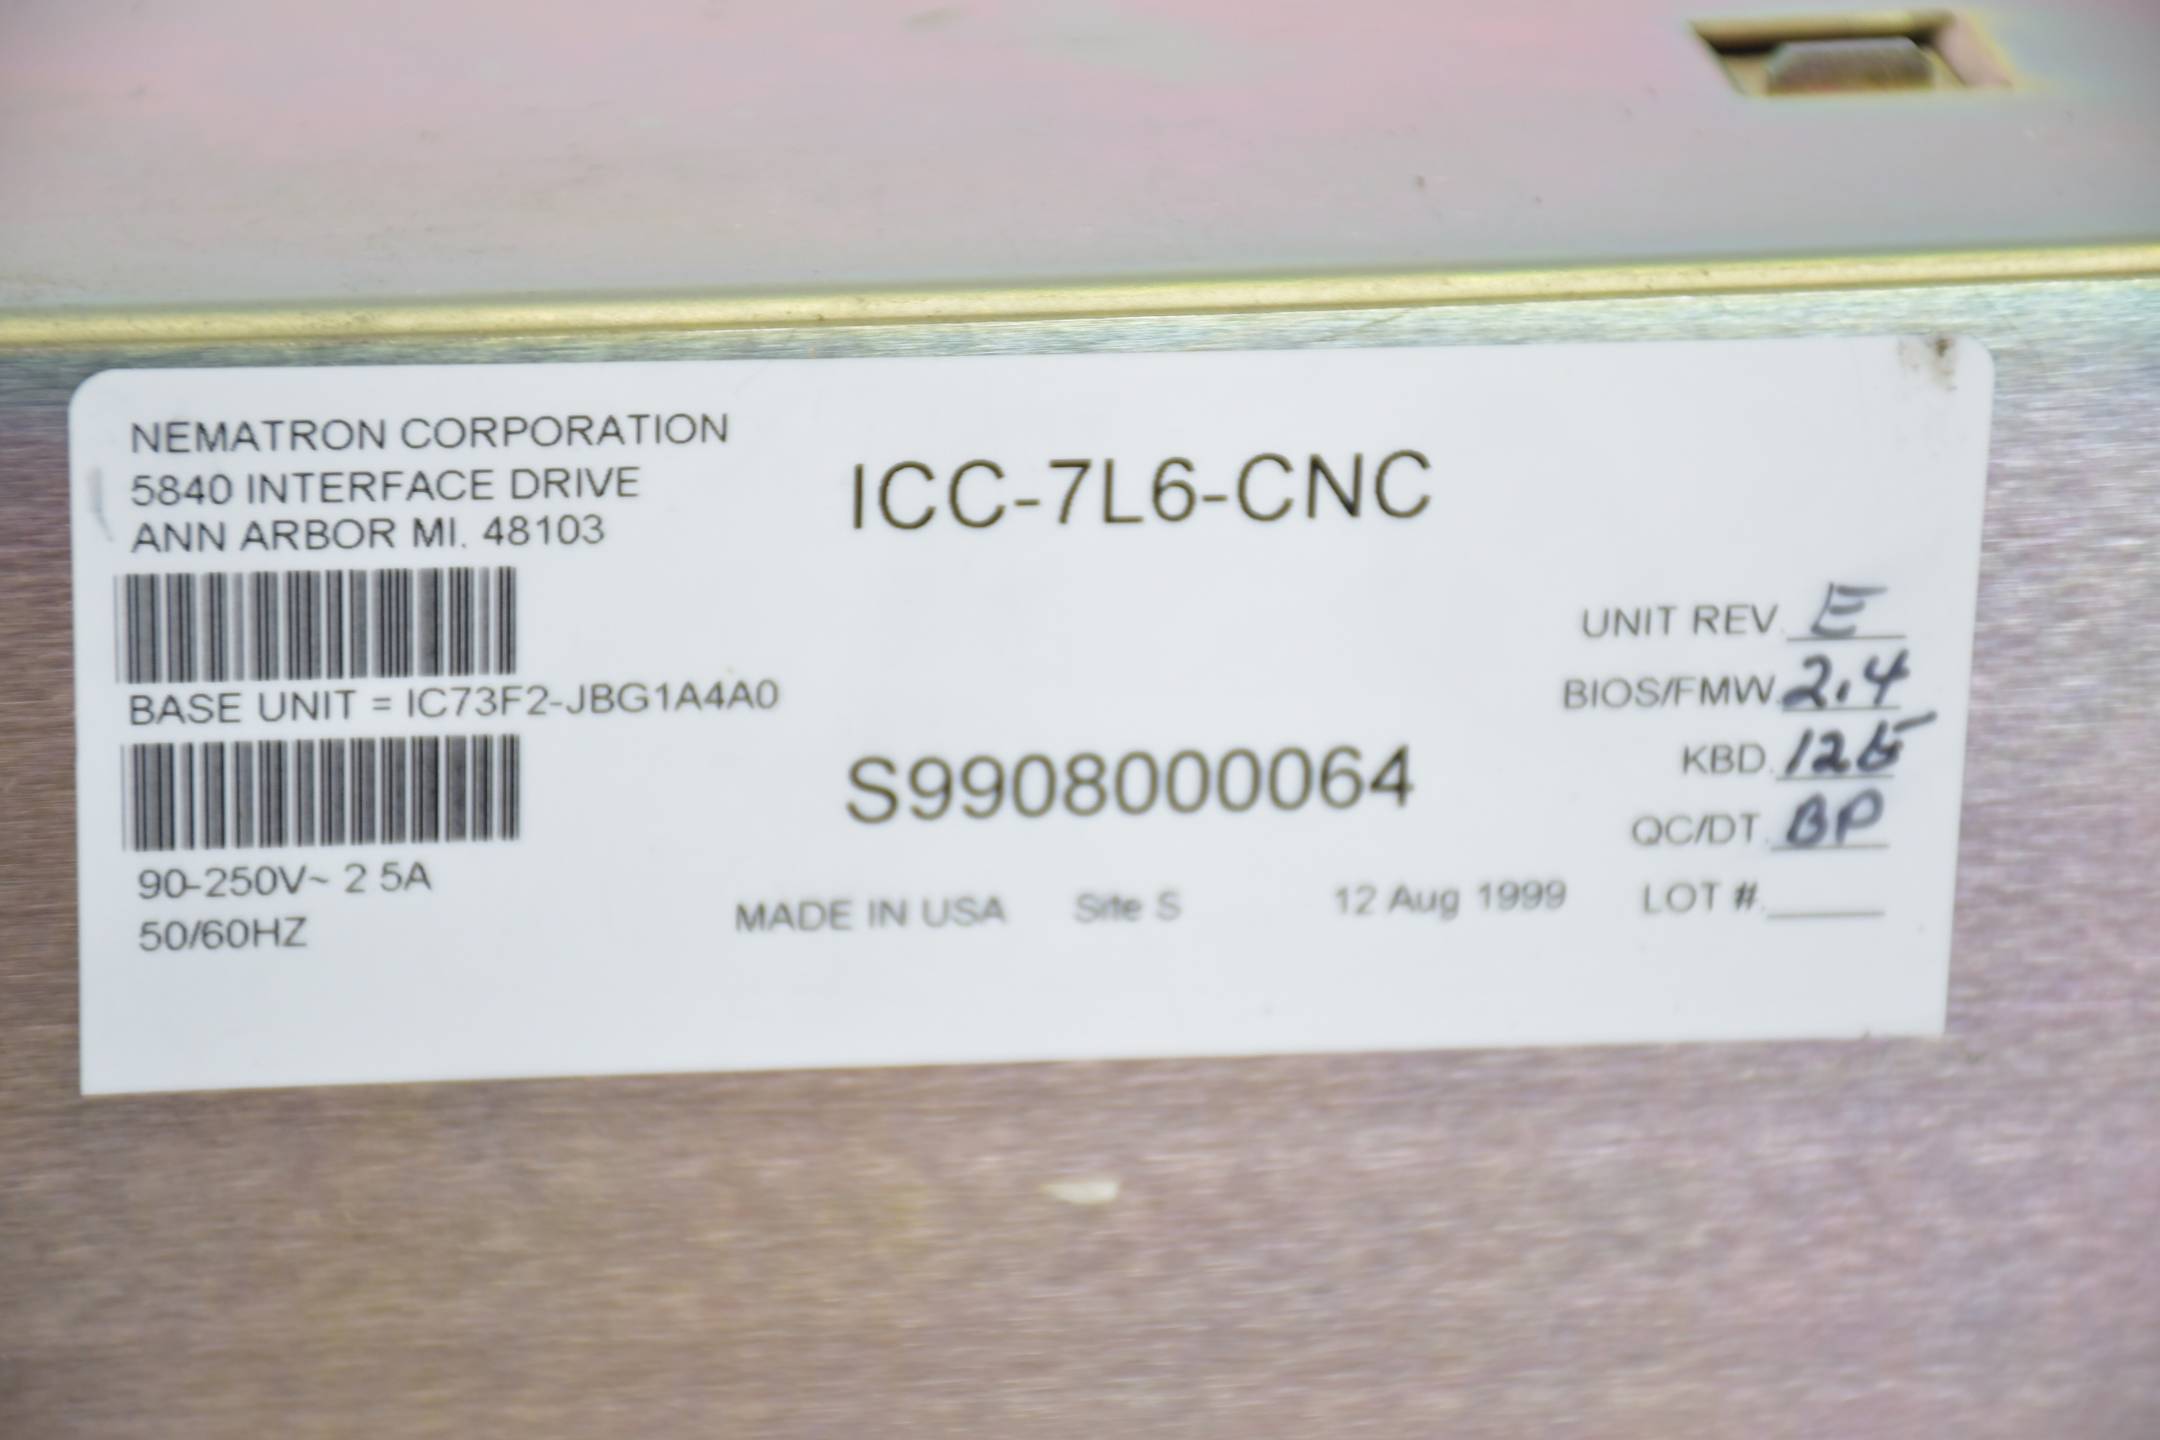 Nematron Corporation 5840 Interface Drive ANN Arbor MI. 48103 ICC-7L6-CNC